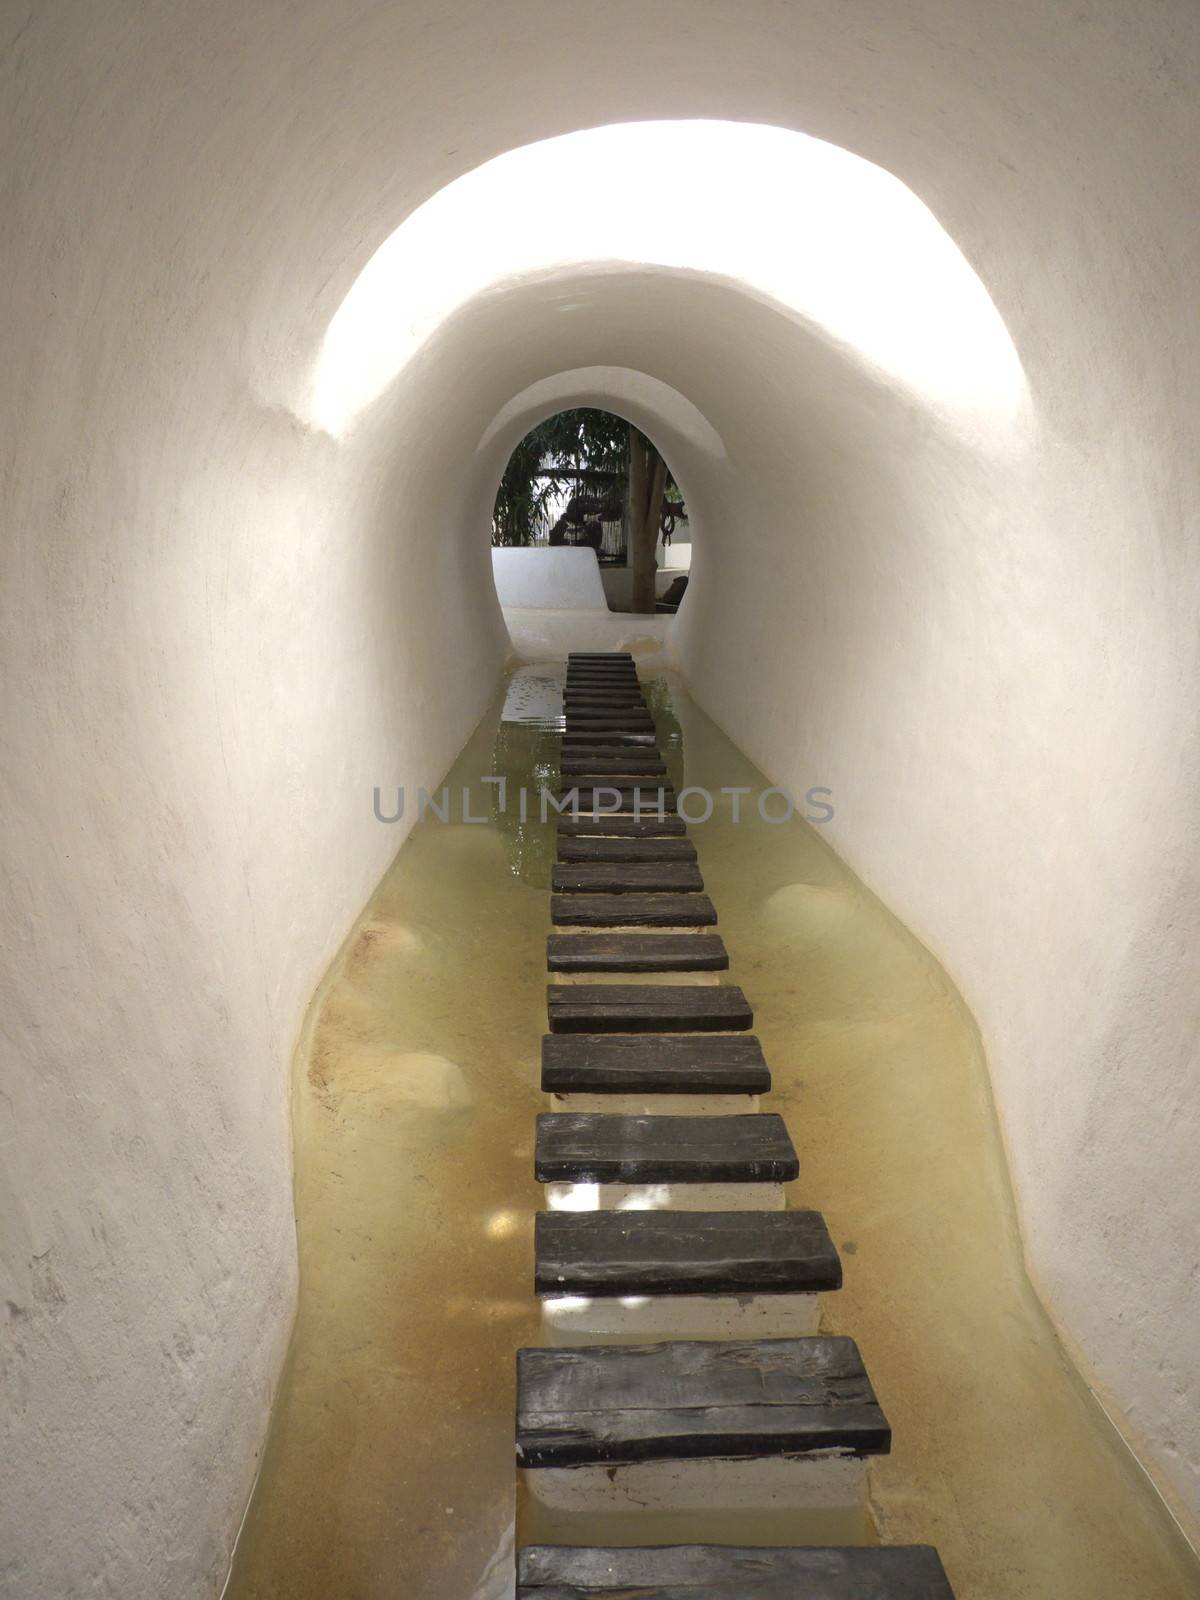 Tunnel in Lagomar, Nazaret, Lanzarote by mitzy